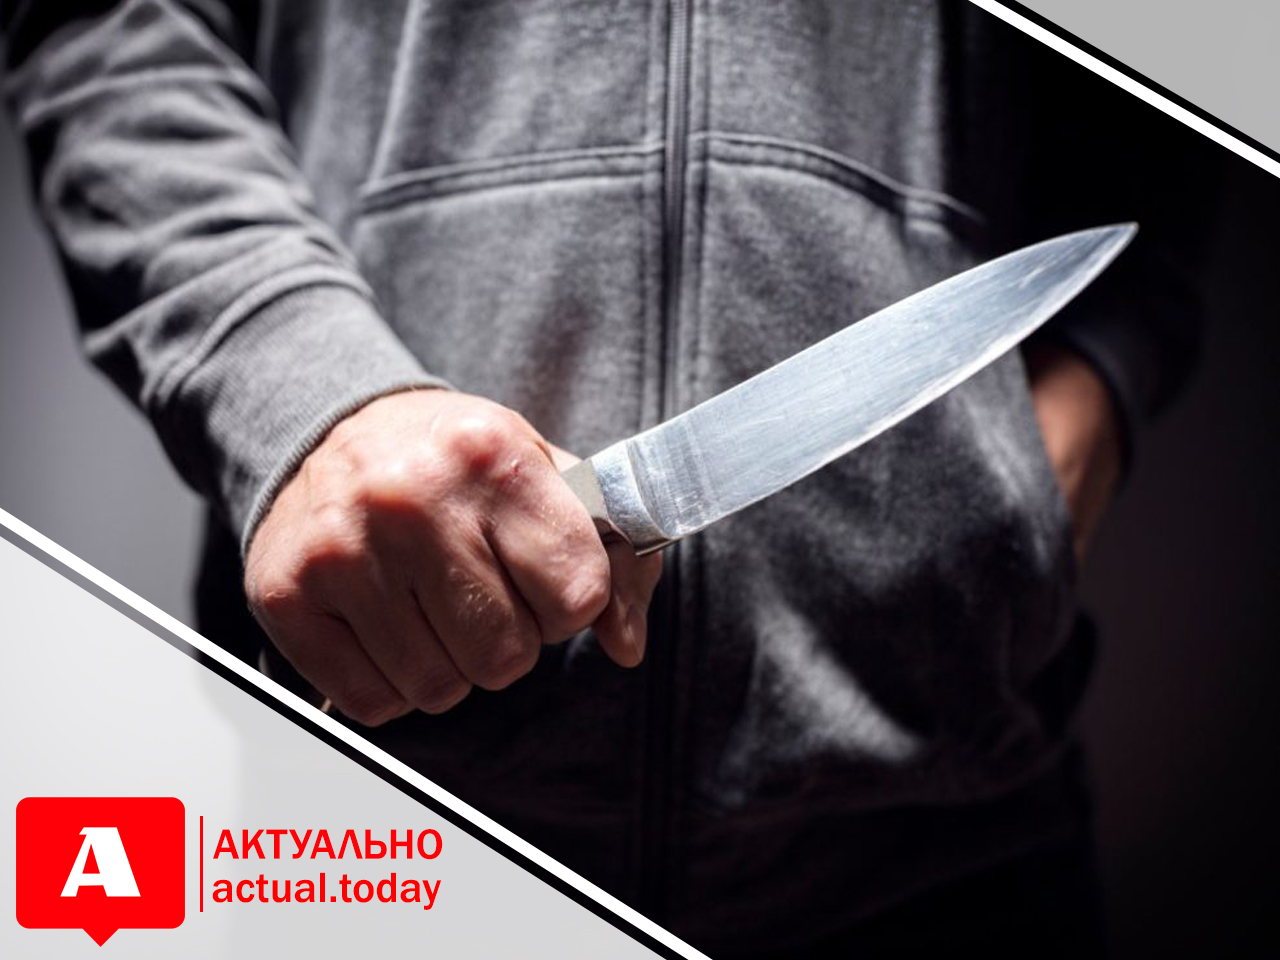 В Запорожской области мужчина разбил дверь в продуктовом магазине и угрожал ножом правоохранителям (ФОТО)